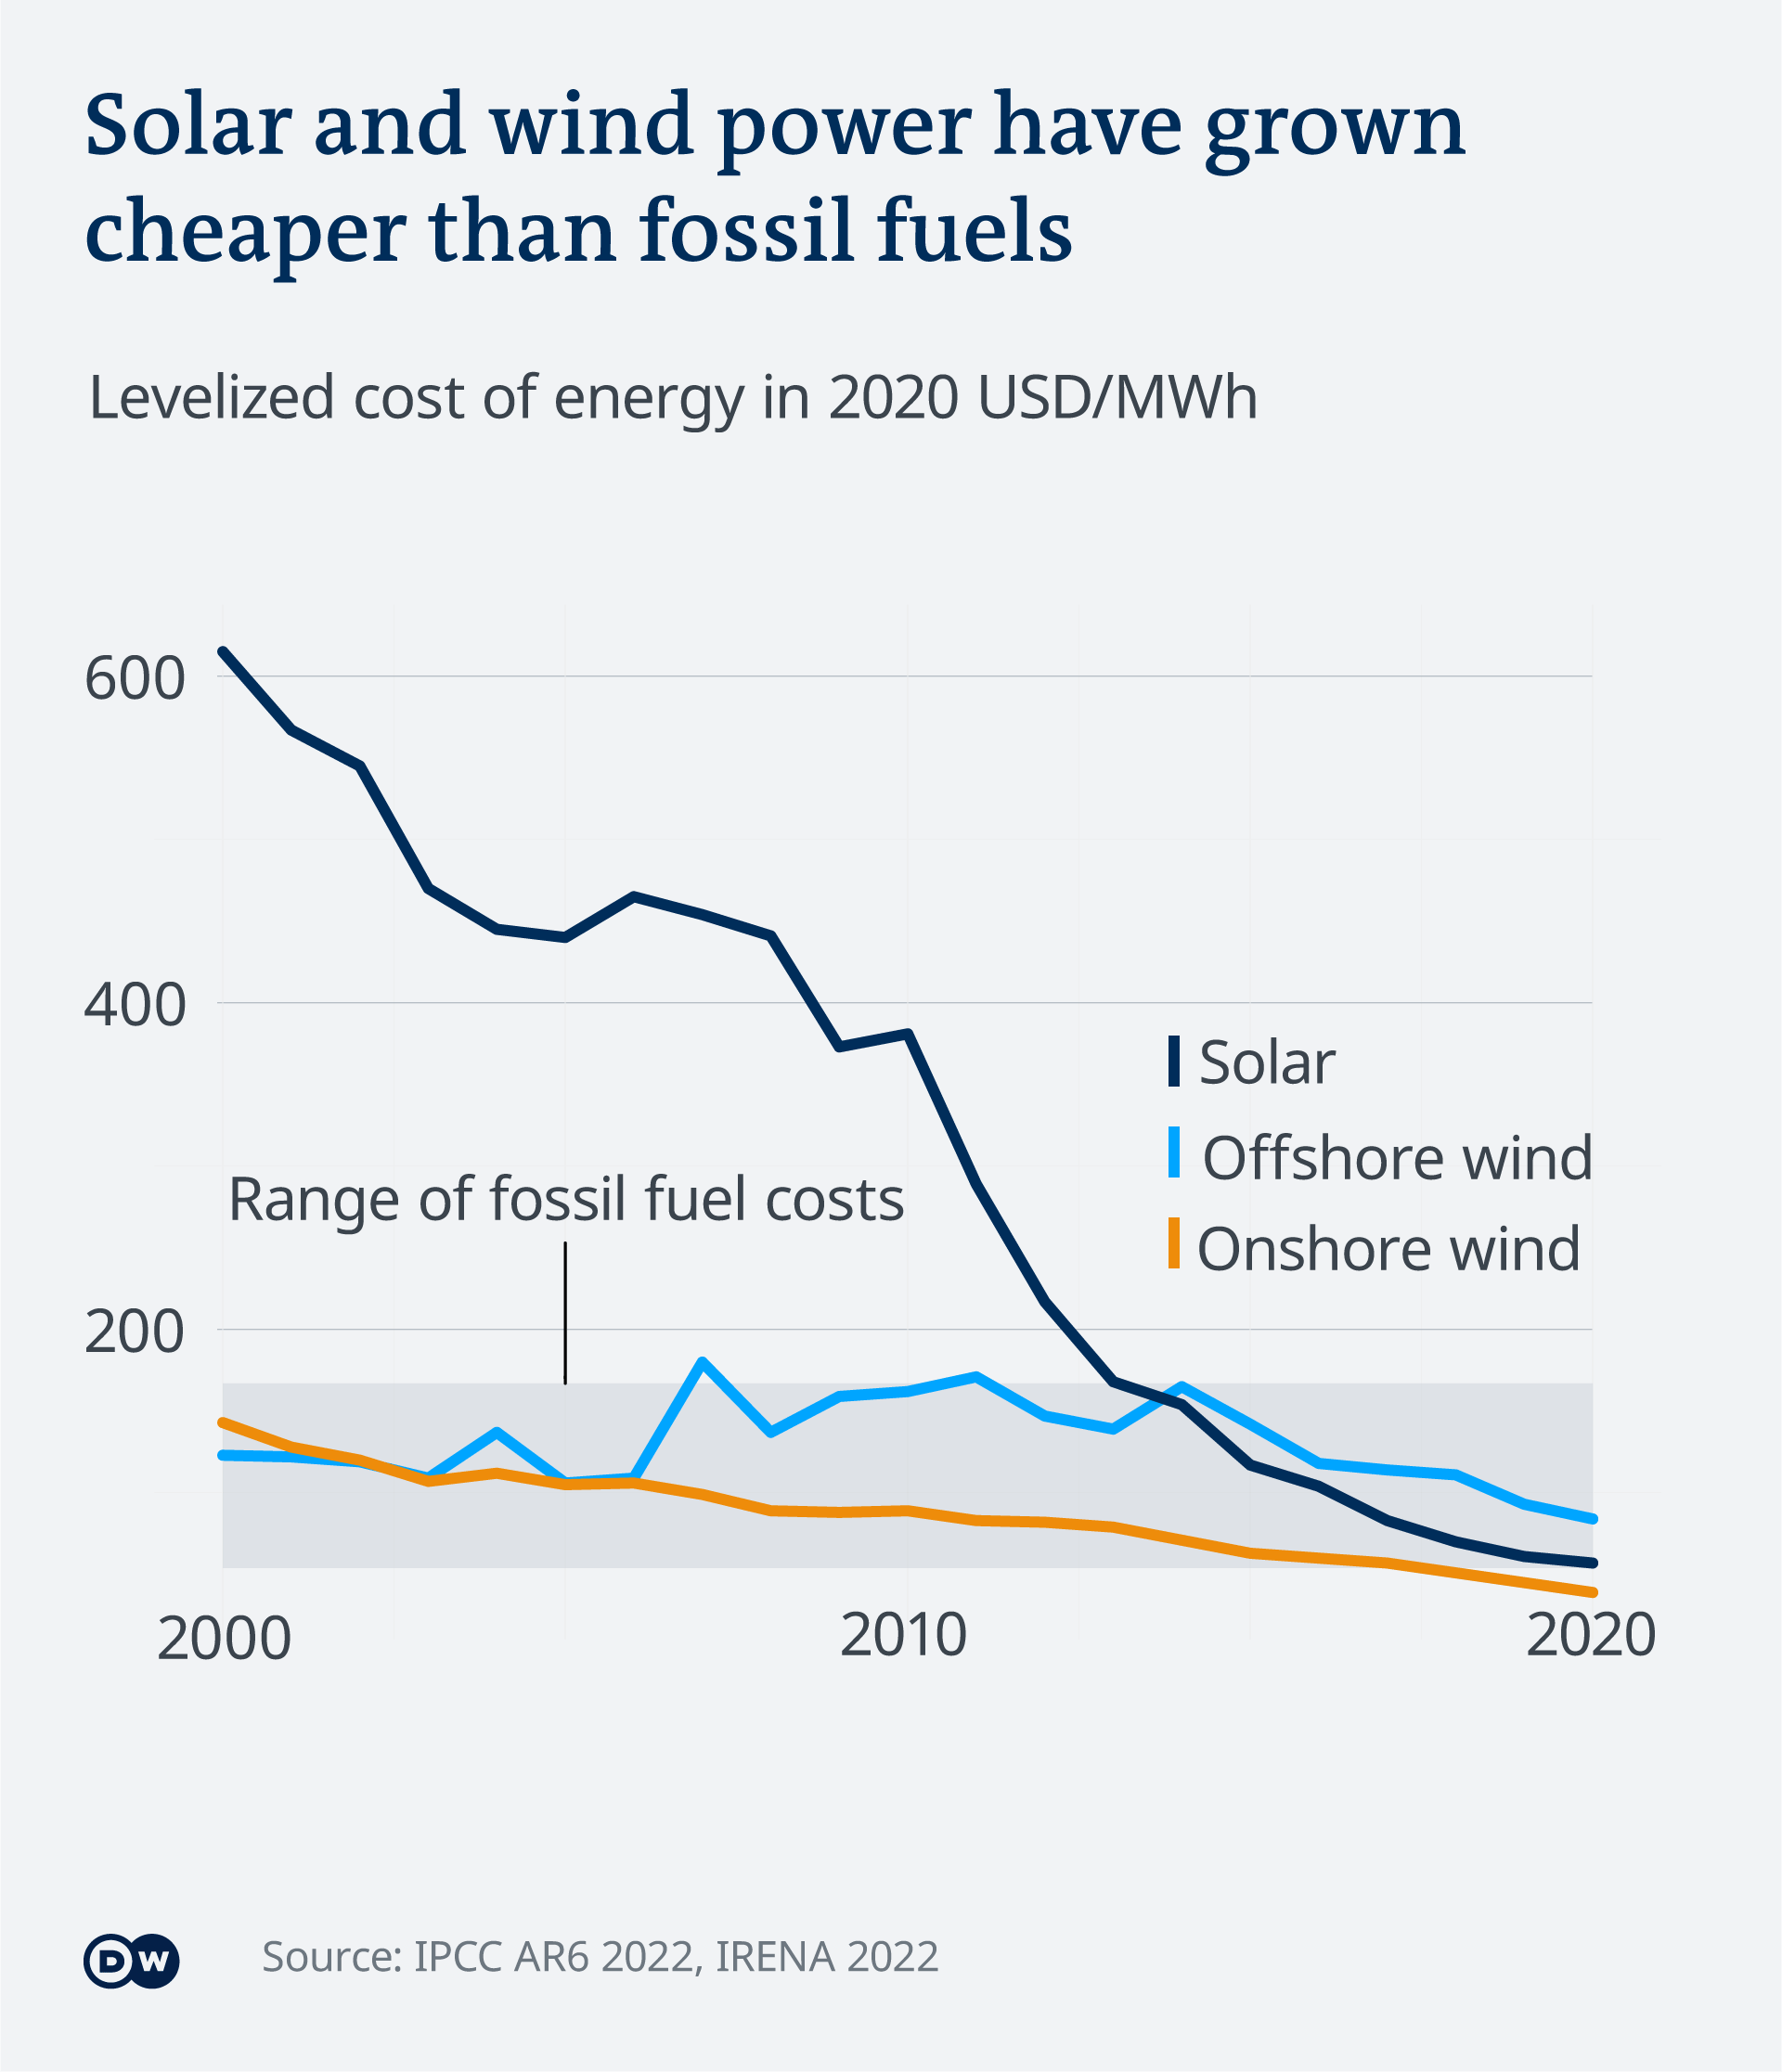 fossil fuels pollution statistics